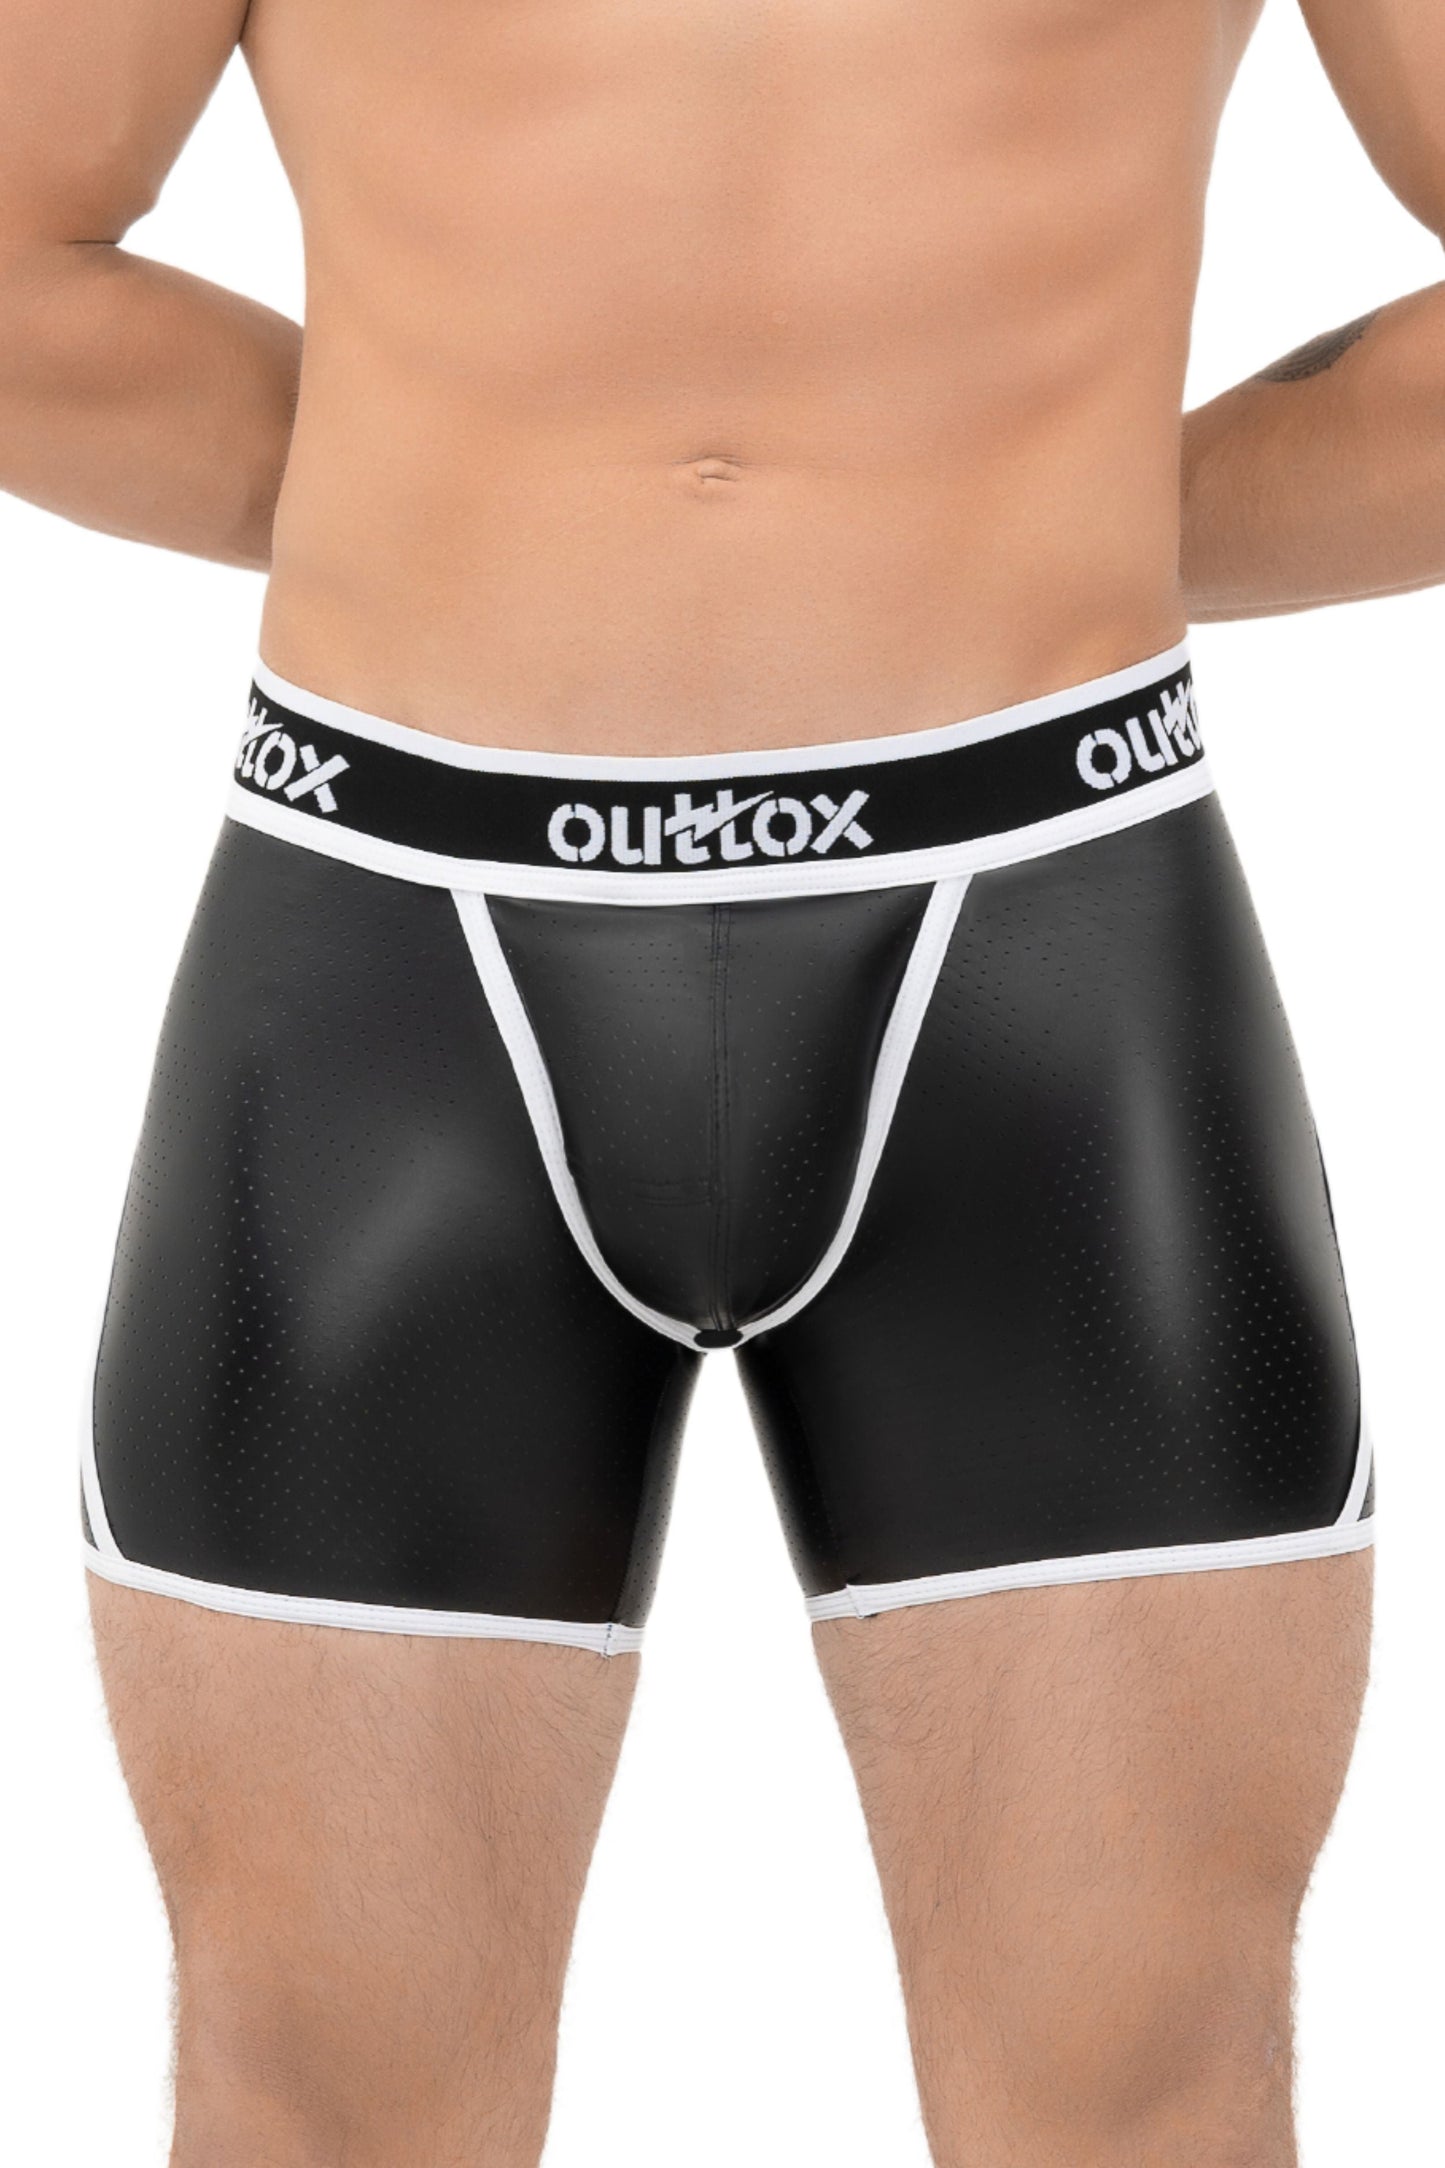 Outtox. Offene hintere Shorts mit Snap Codpiece. Schwarz+Weiß